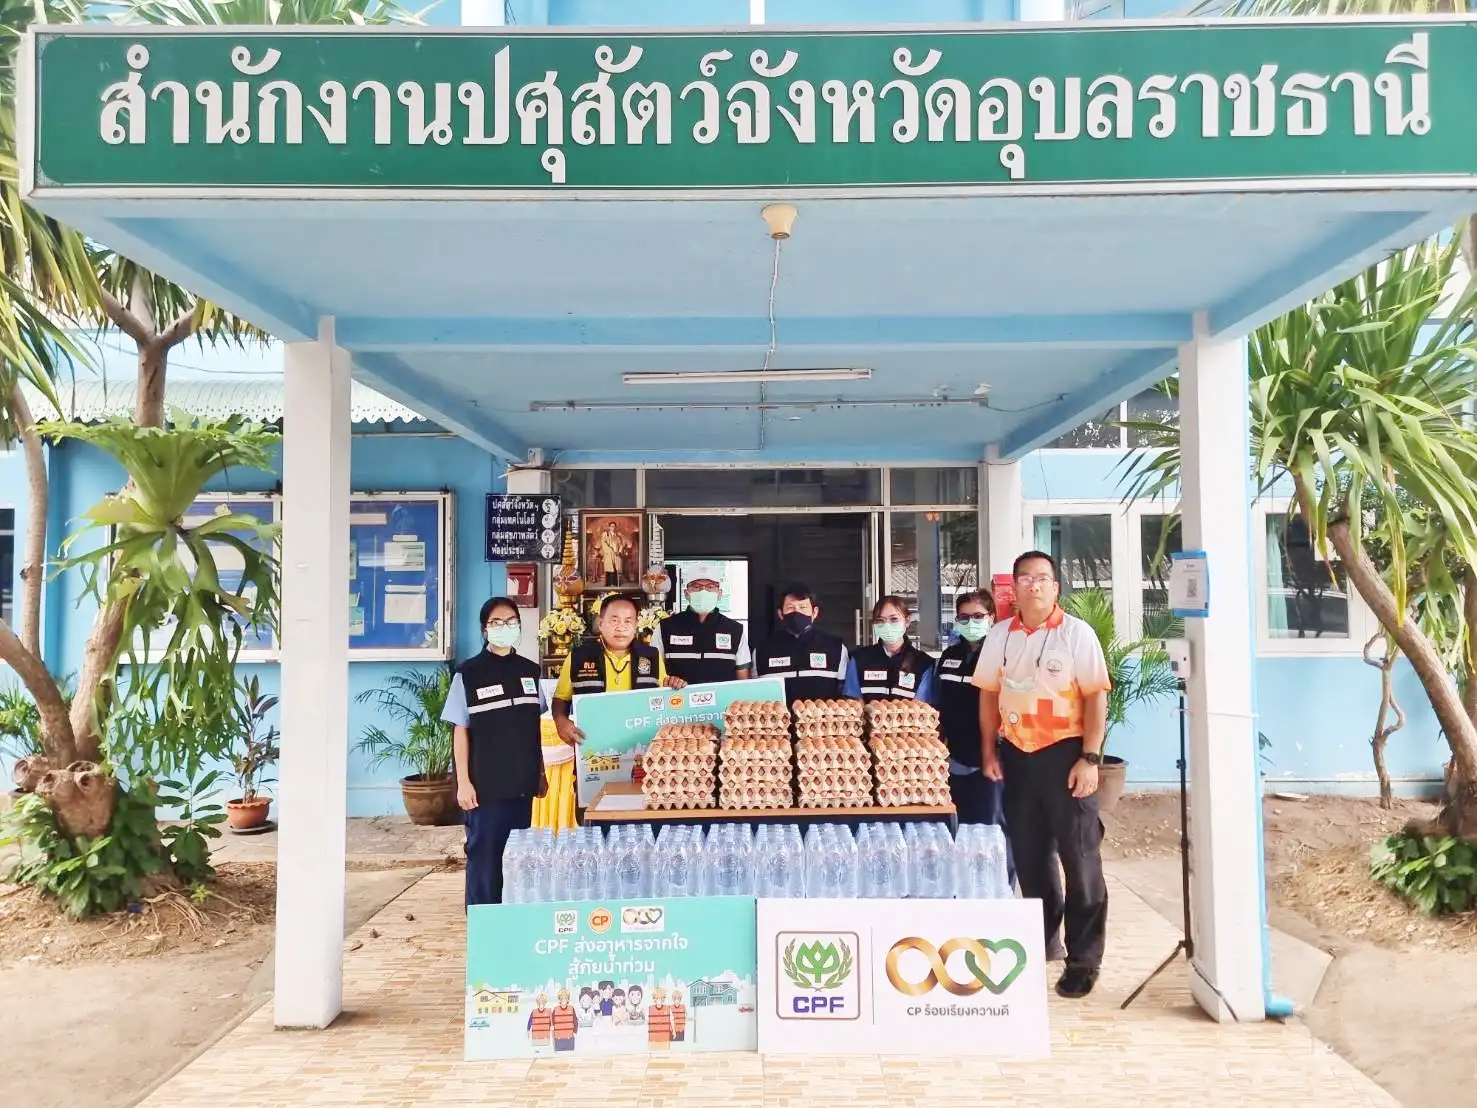 จิตอาสาซีพีเอฟ ลงพื้นที่แจกจ่ายอาหาร 24 จังหวัดทั่วไทย สู้ภัยน้ำท่วม HealthServ